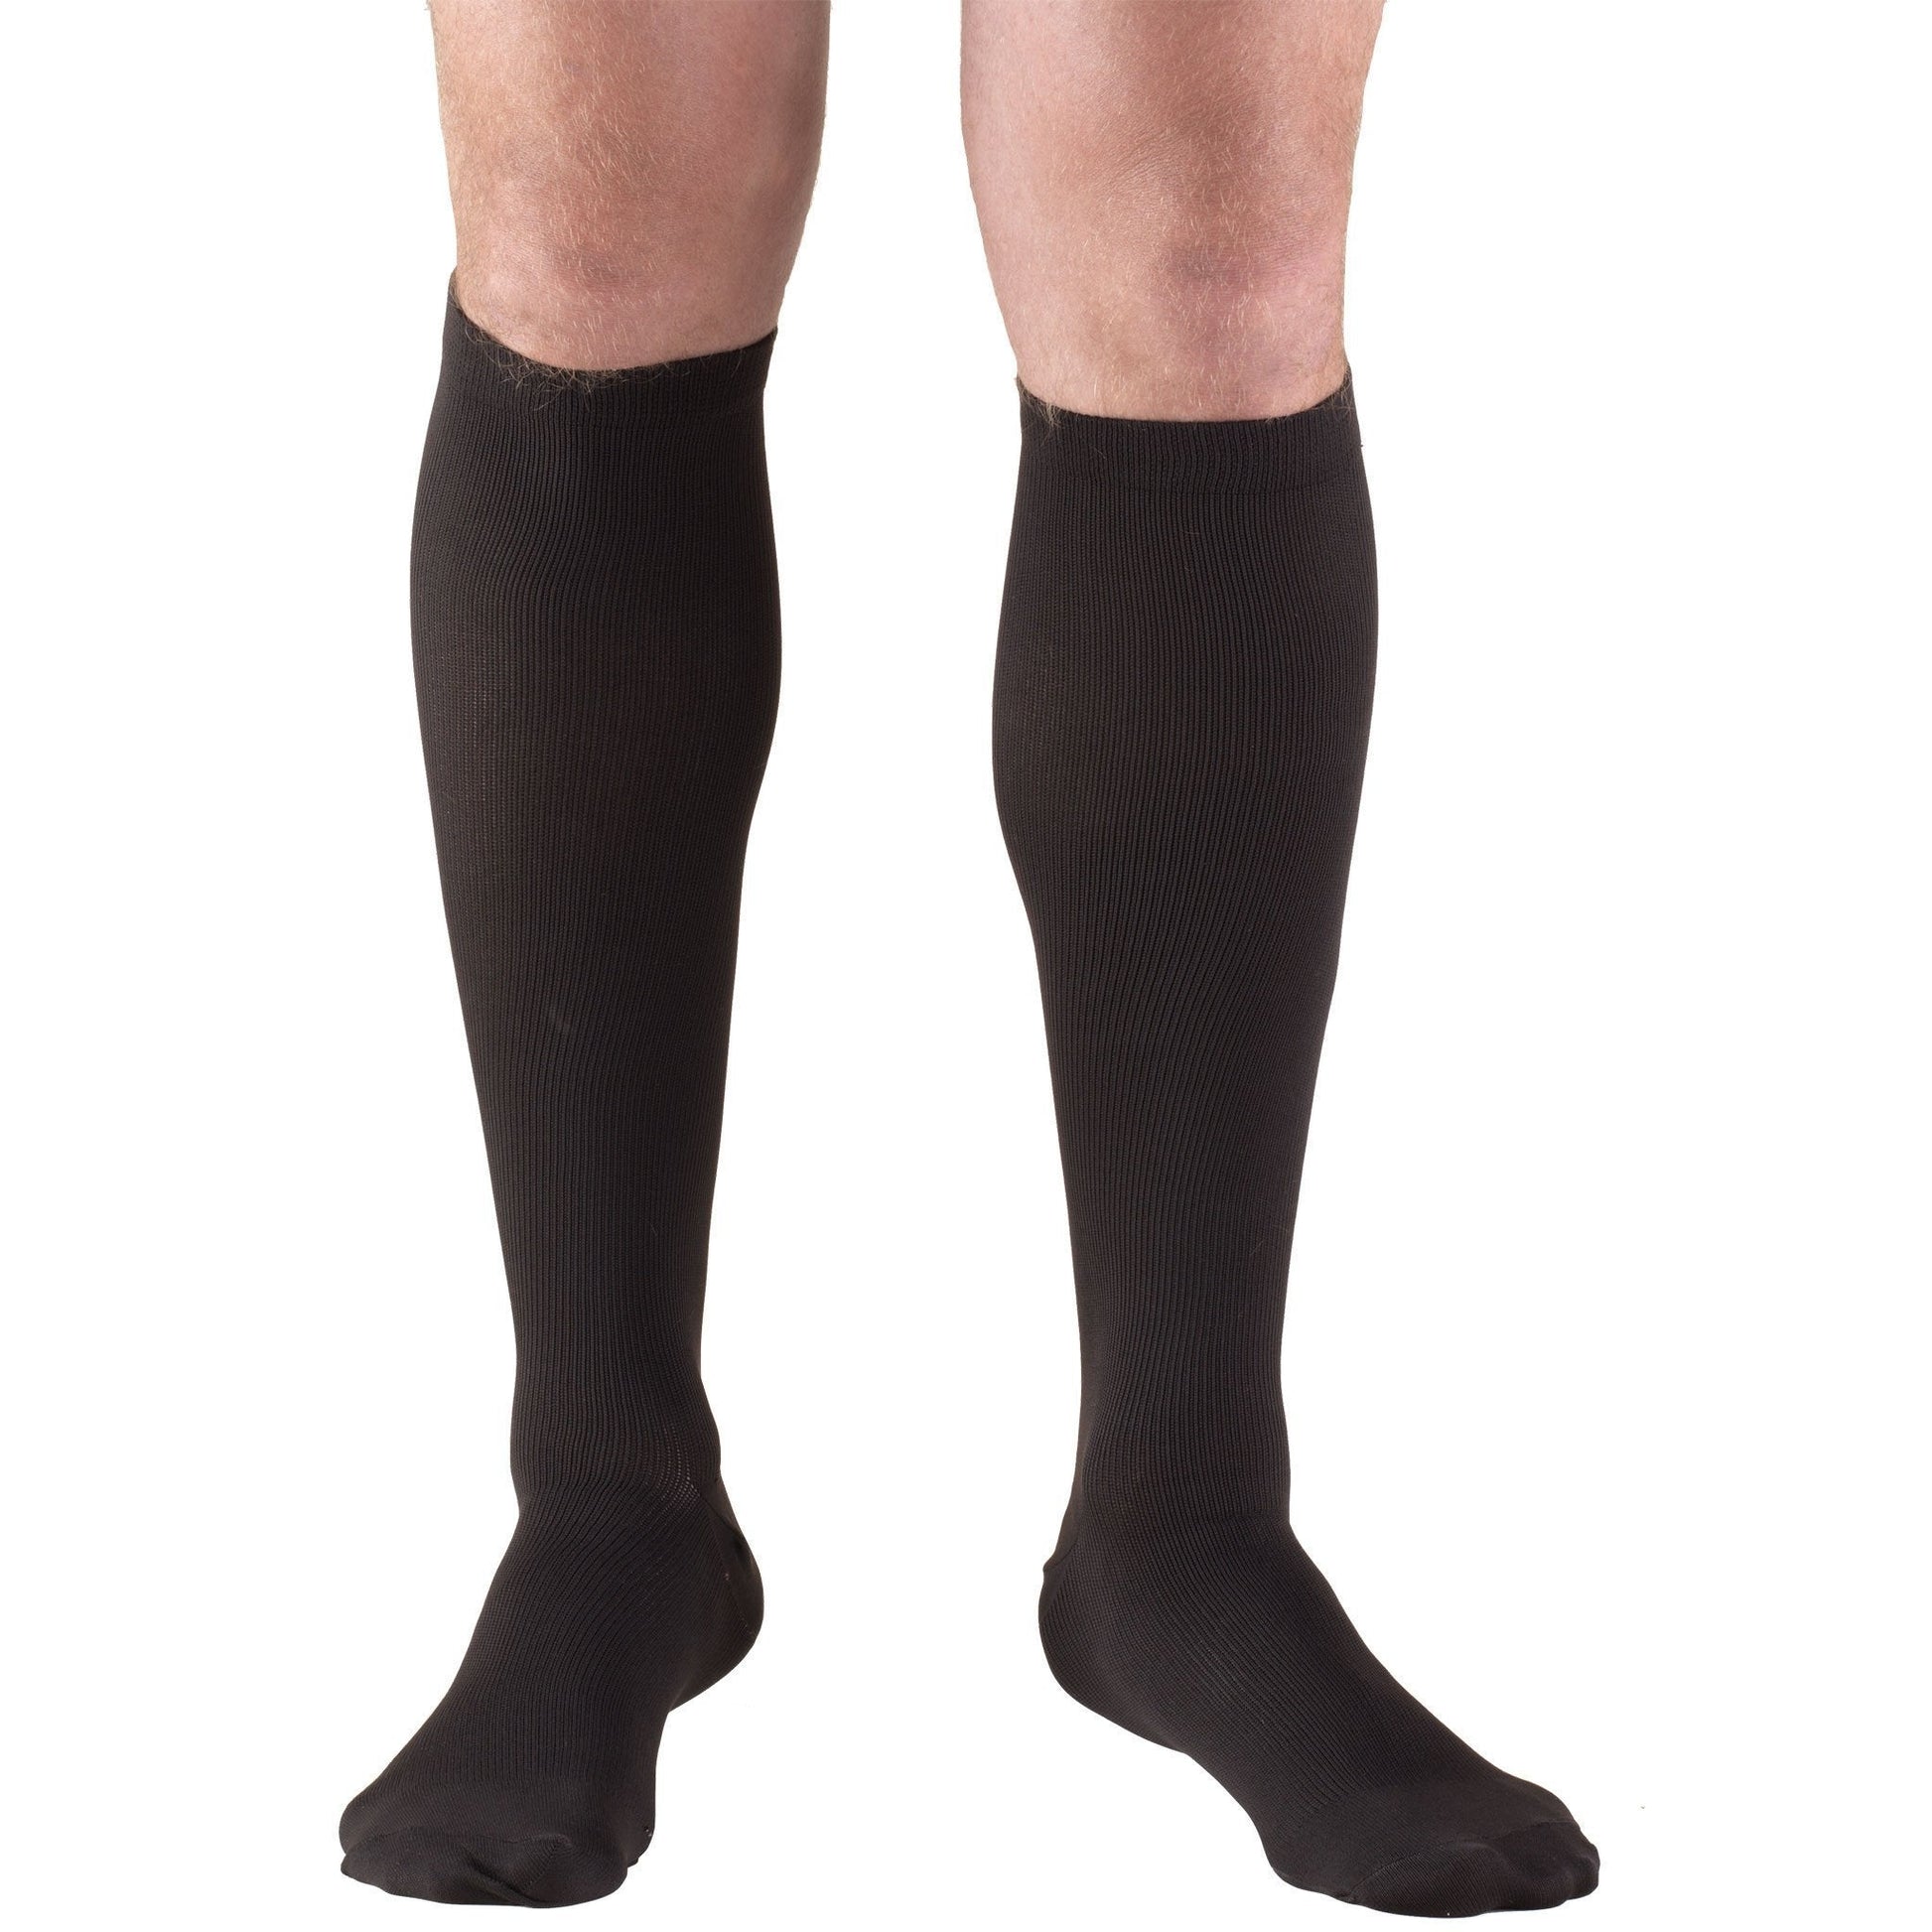 Truform Men's Dress 20-30 mmHg Knee High, Black